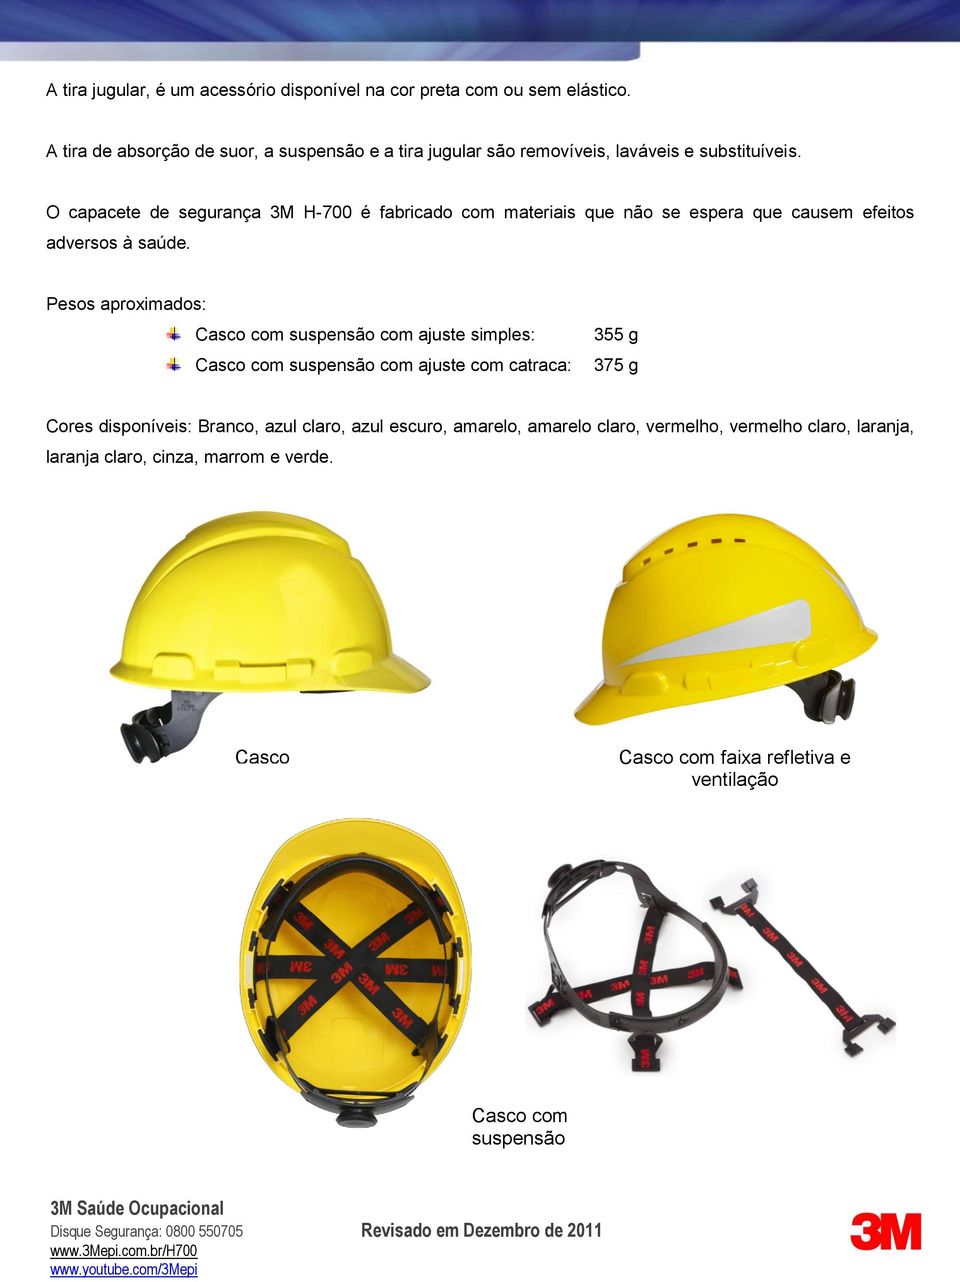 O capacete de segurança 3M H-700 é fabricado com materiais que não se espera que causem efeitos adversos à saúde.